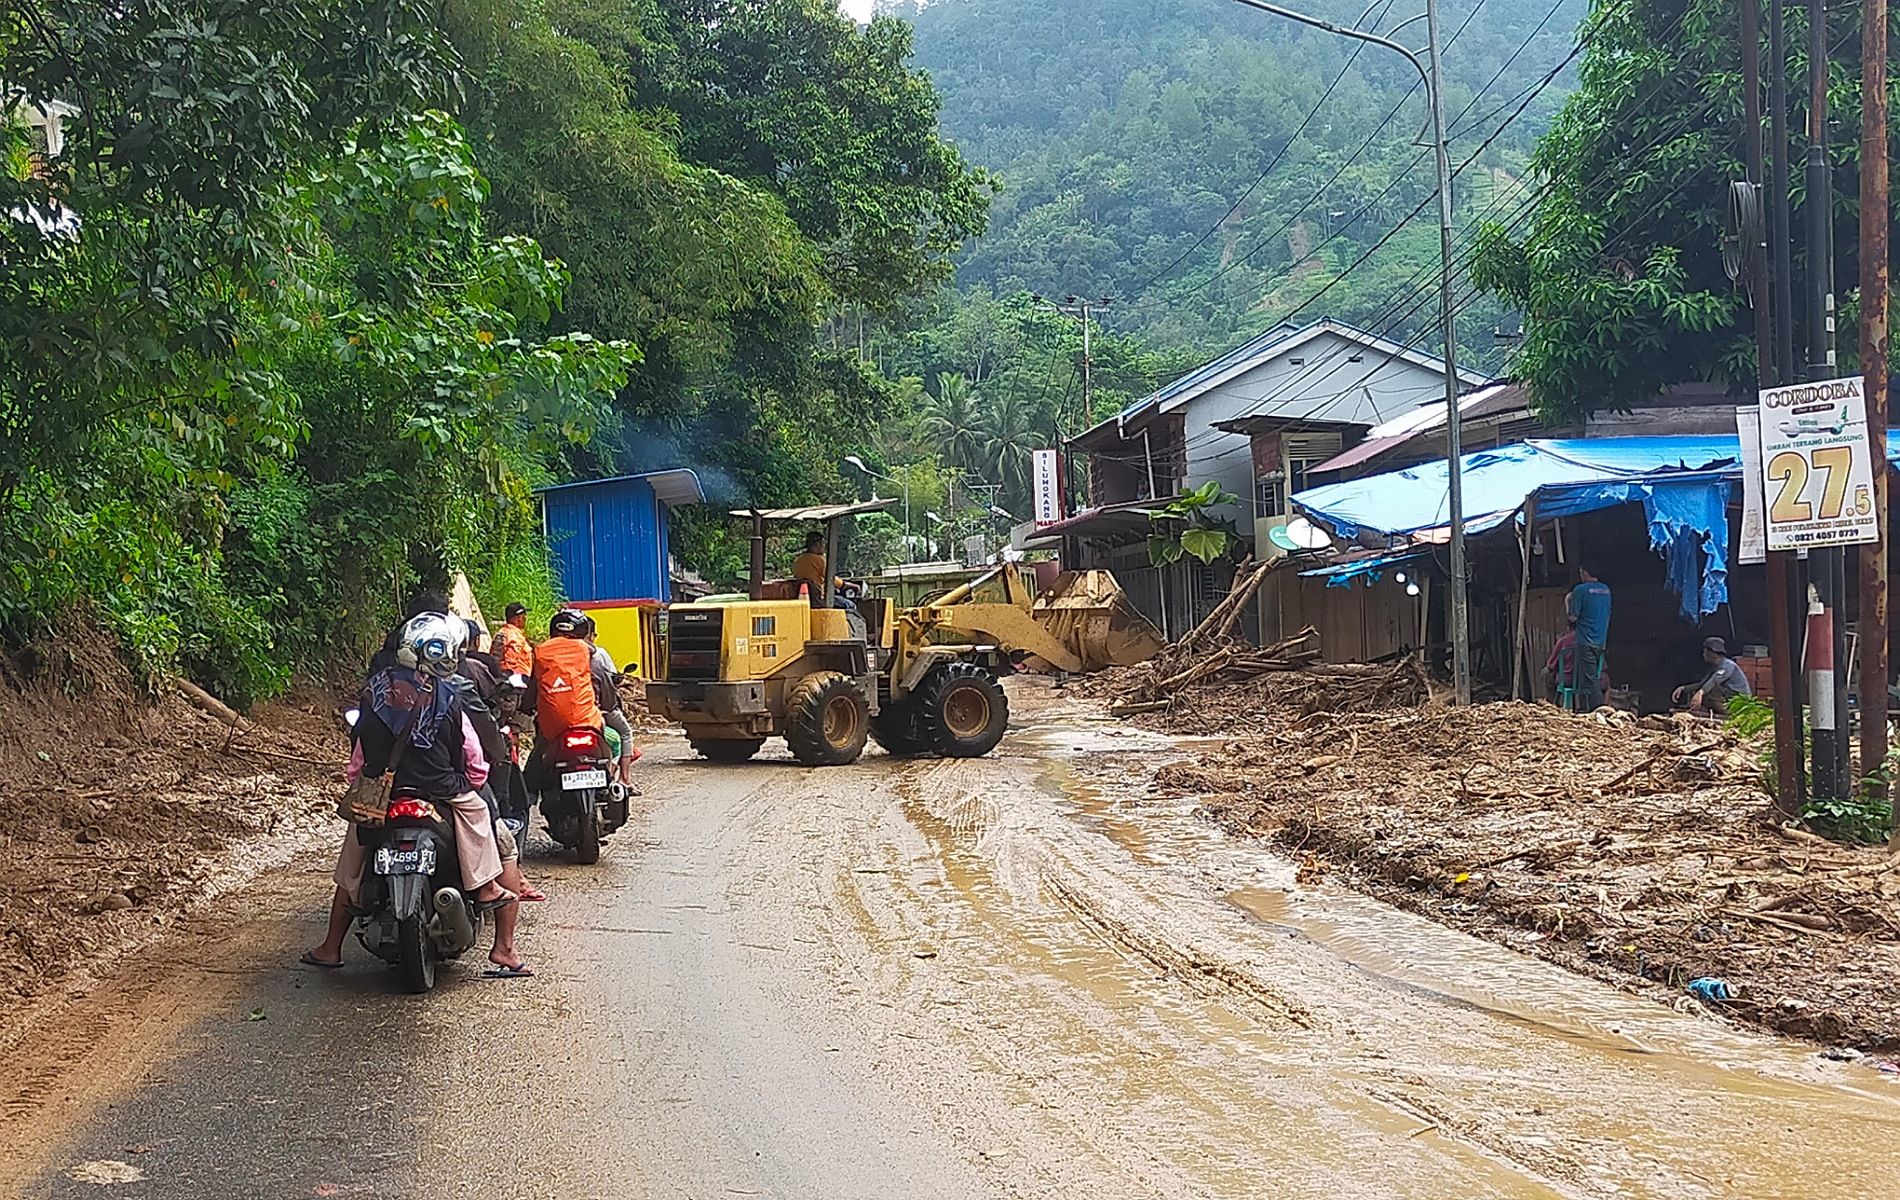 Hingga pukul 14.00 WIB tadi siang pihak PUPR Sumbar masih melakukan pembersihan material longsor yang terjadi akibat hujan deras semalaman di ruas jalan trans Sumatera Desa Silungkang Tigo, kini lalulintas sudah lancar kembali